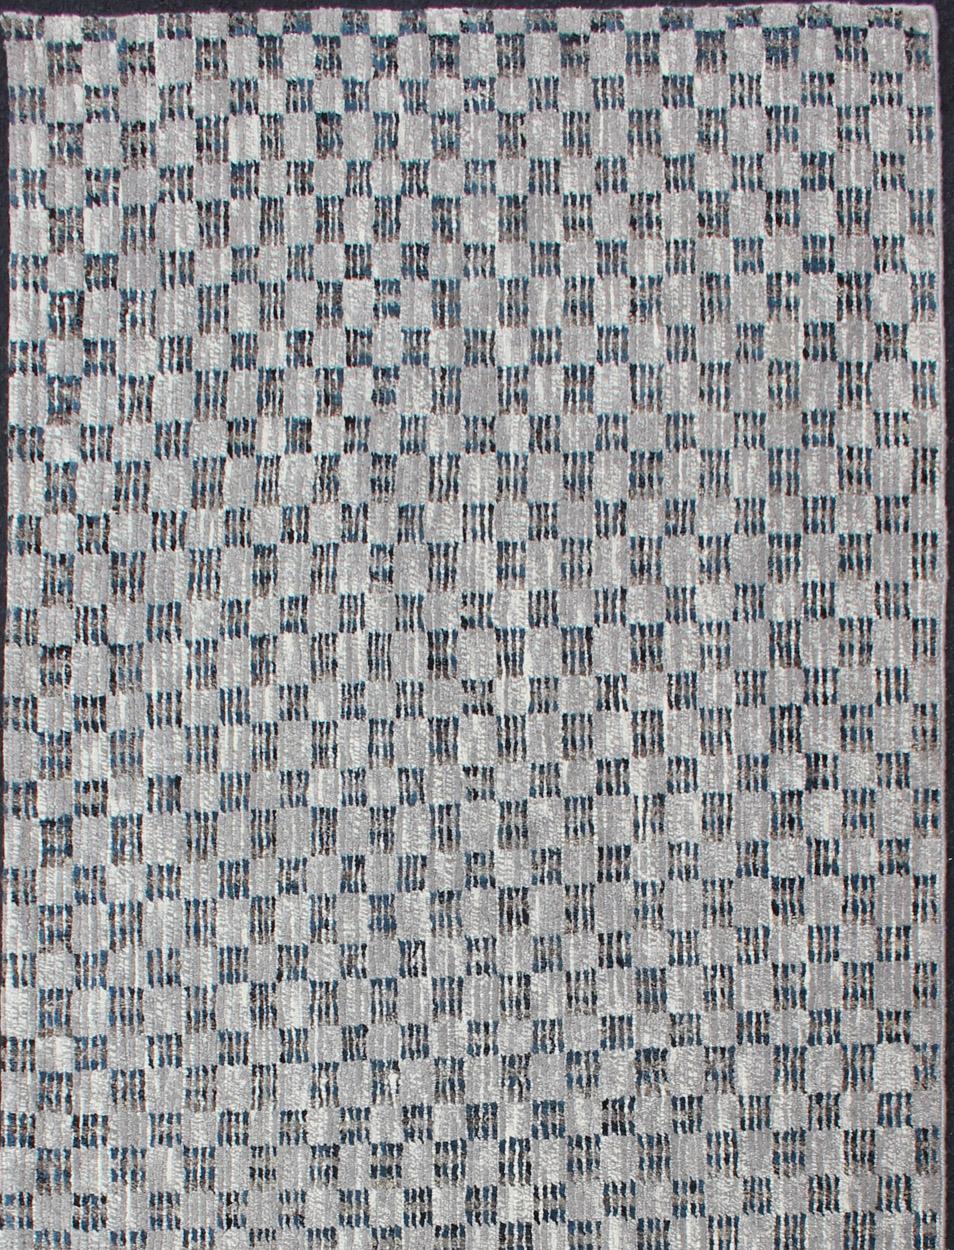 Tapis moderne empilé avec motif de damier en bleu et gris, tapis/OB-955670, pays d'origine / type : Inde/ Piled, état : neuf

Ce tapis flambant neuf présente un design moderne en damier et une composition de gris et de bleus. La palette de